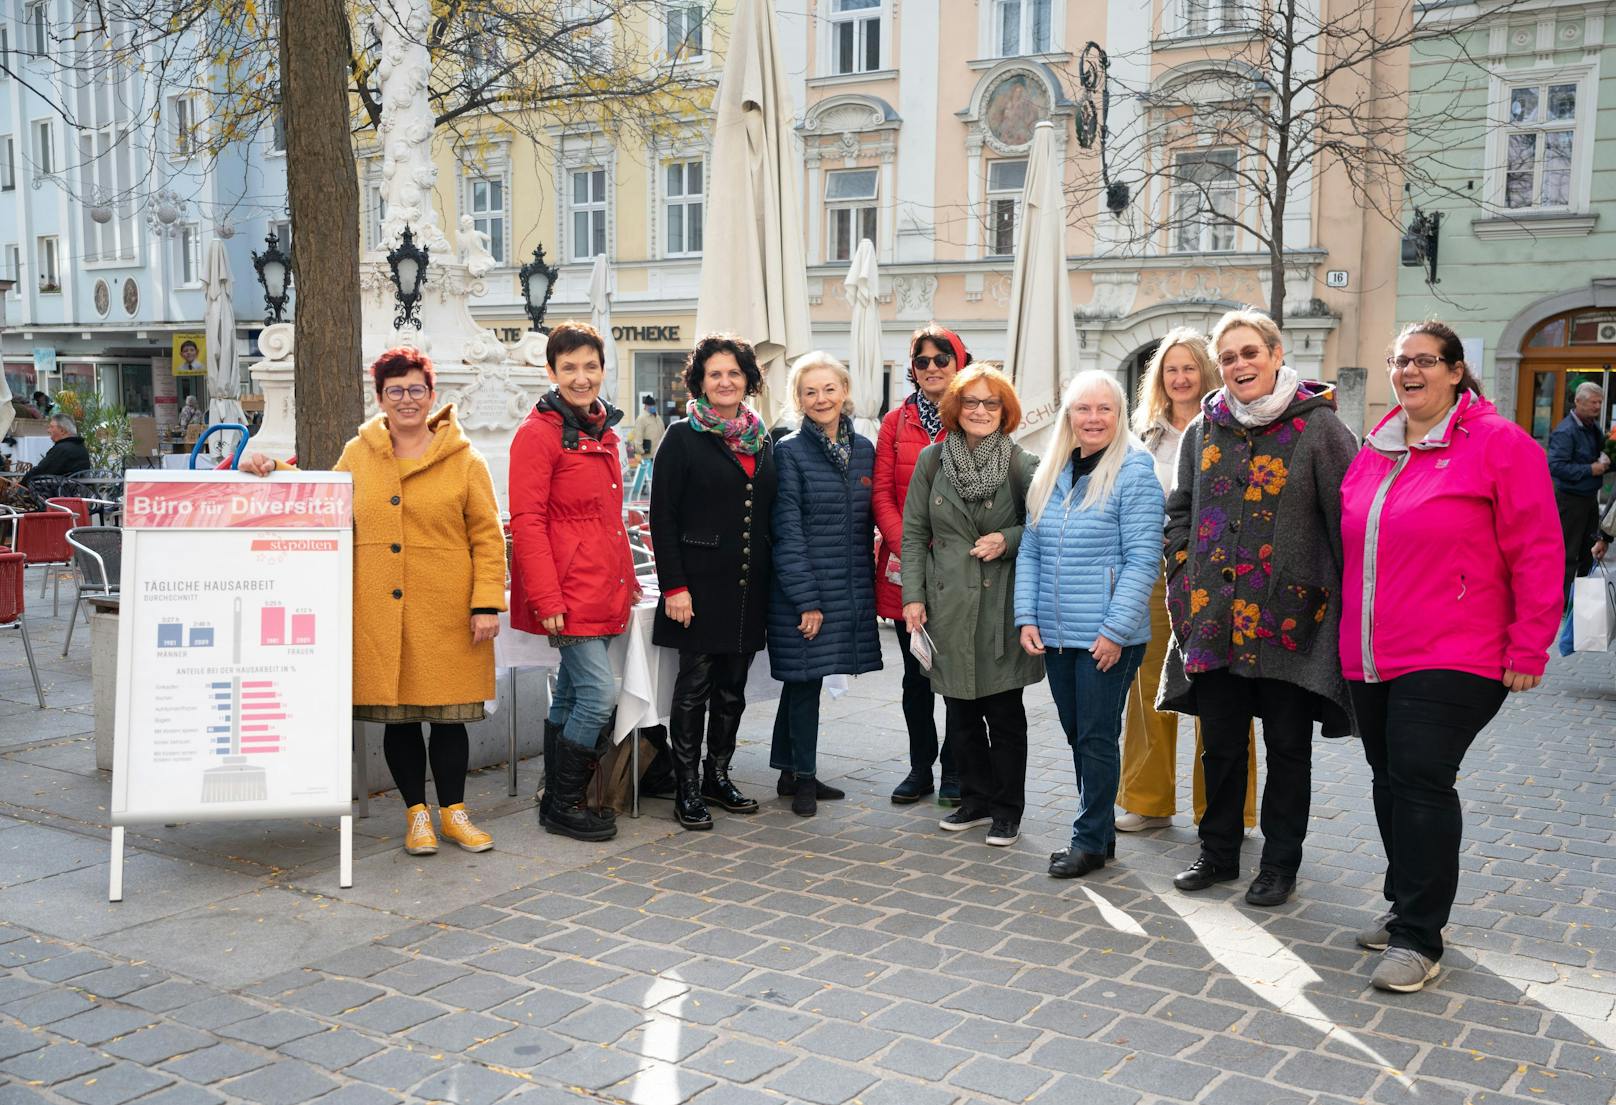 Die Mitglieder der Frauenplattform St. Pölten (eine Initiative des Büros für Diversität) machten mittels einer Verteilaktion in der Innenstadt darauf aufmerksam, dass das Erwerbseinkommen der Frauen deutlich unter dem ihrer männlichen Kollegen liegt.